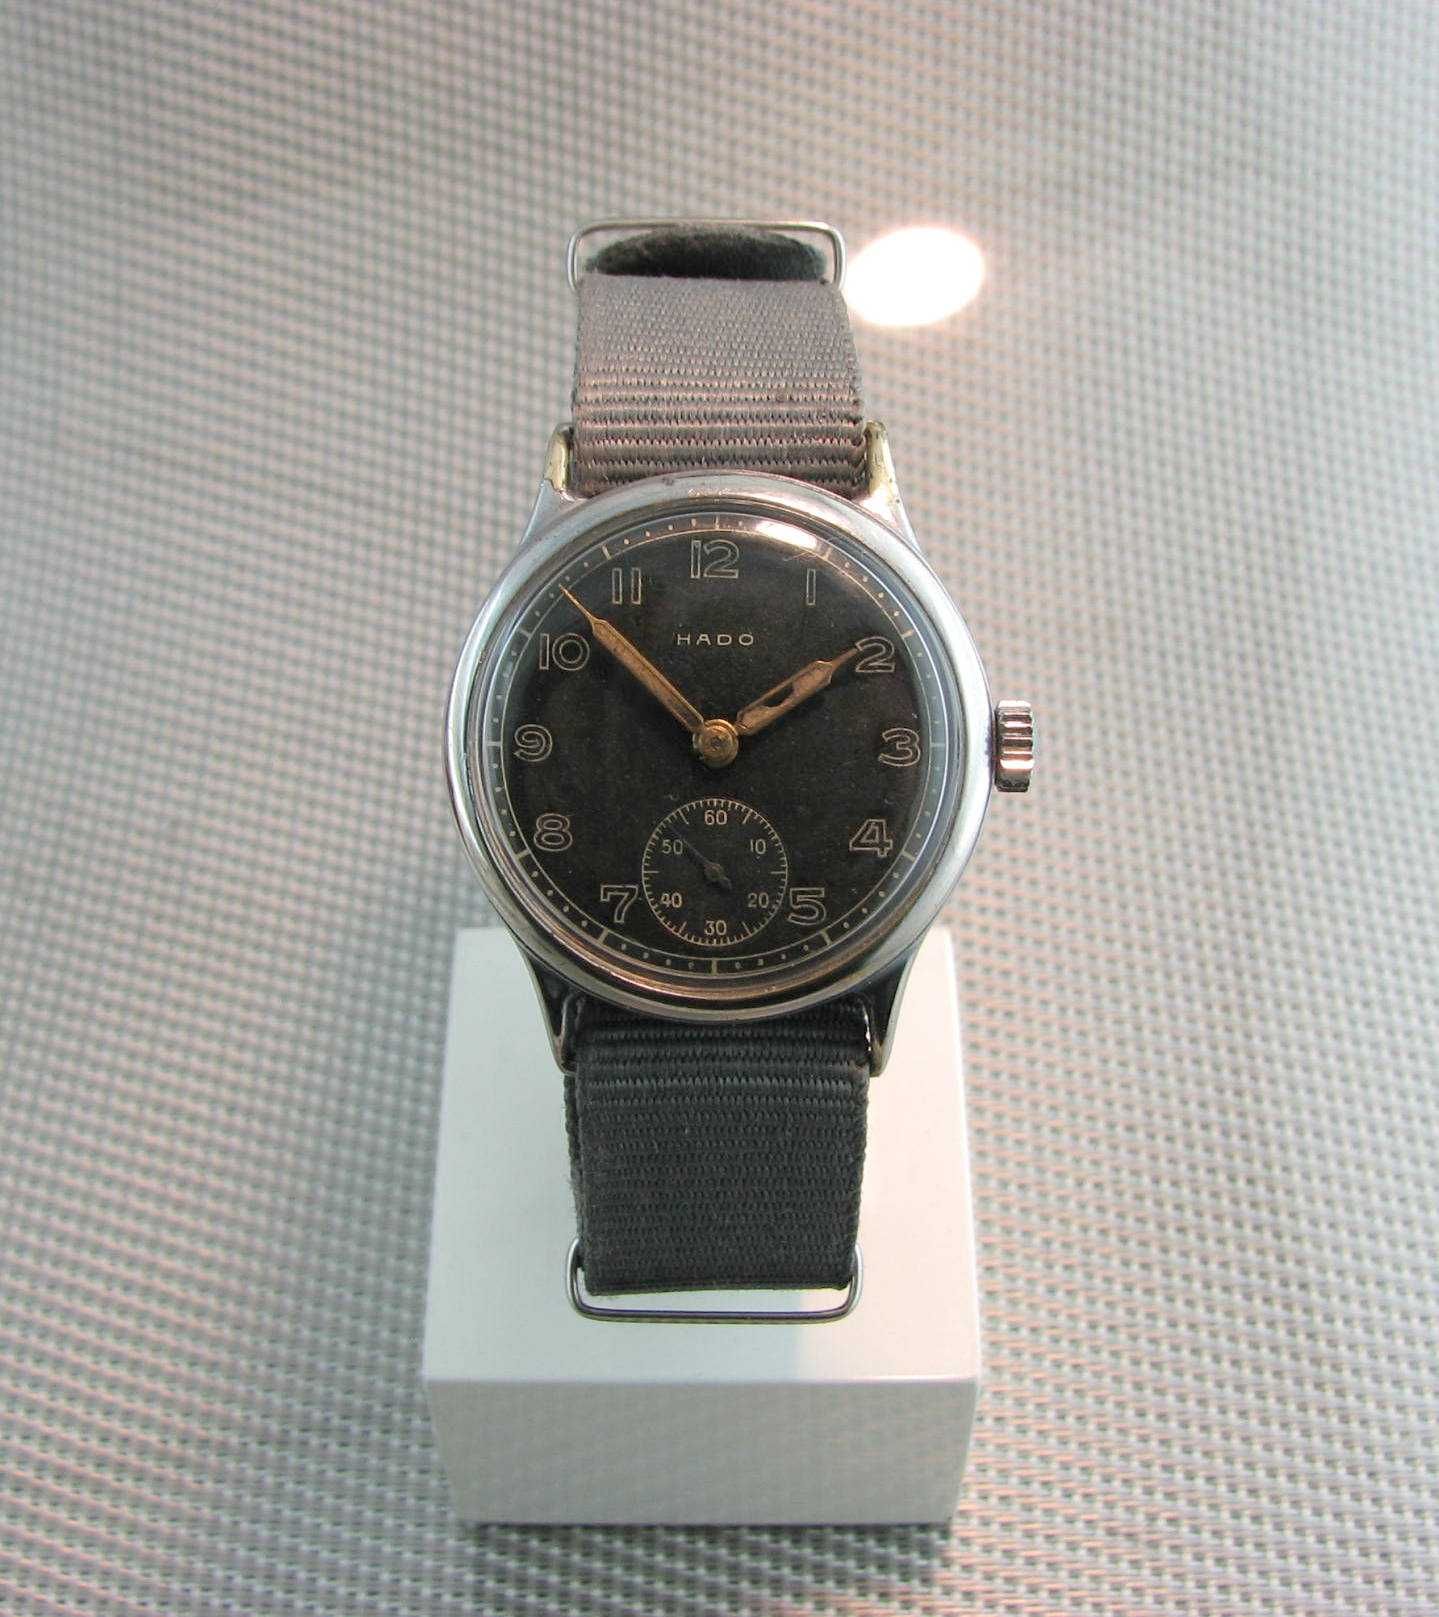 Wojskowy WW2 zegarek HADO  AS, 15 Jewels, Incabloc. Swiss.